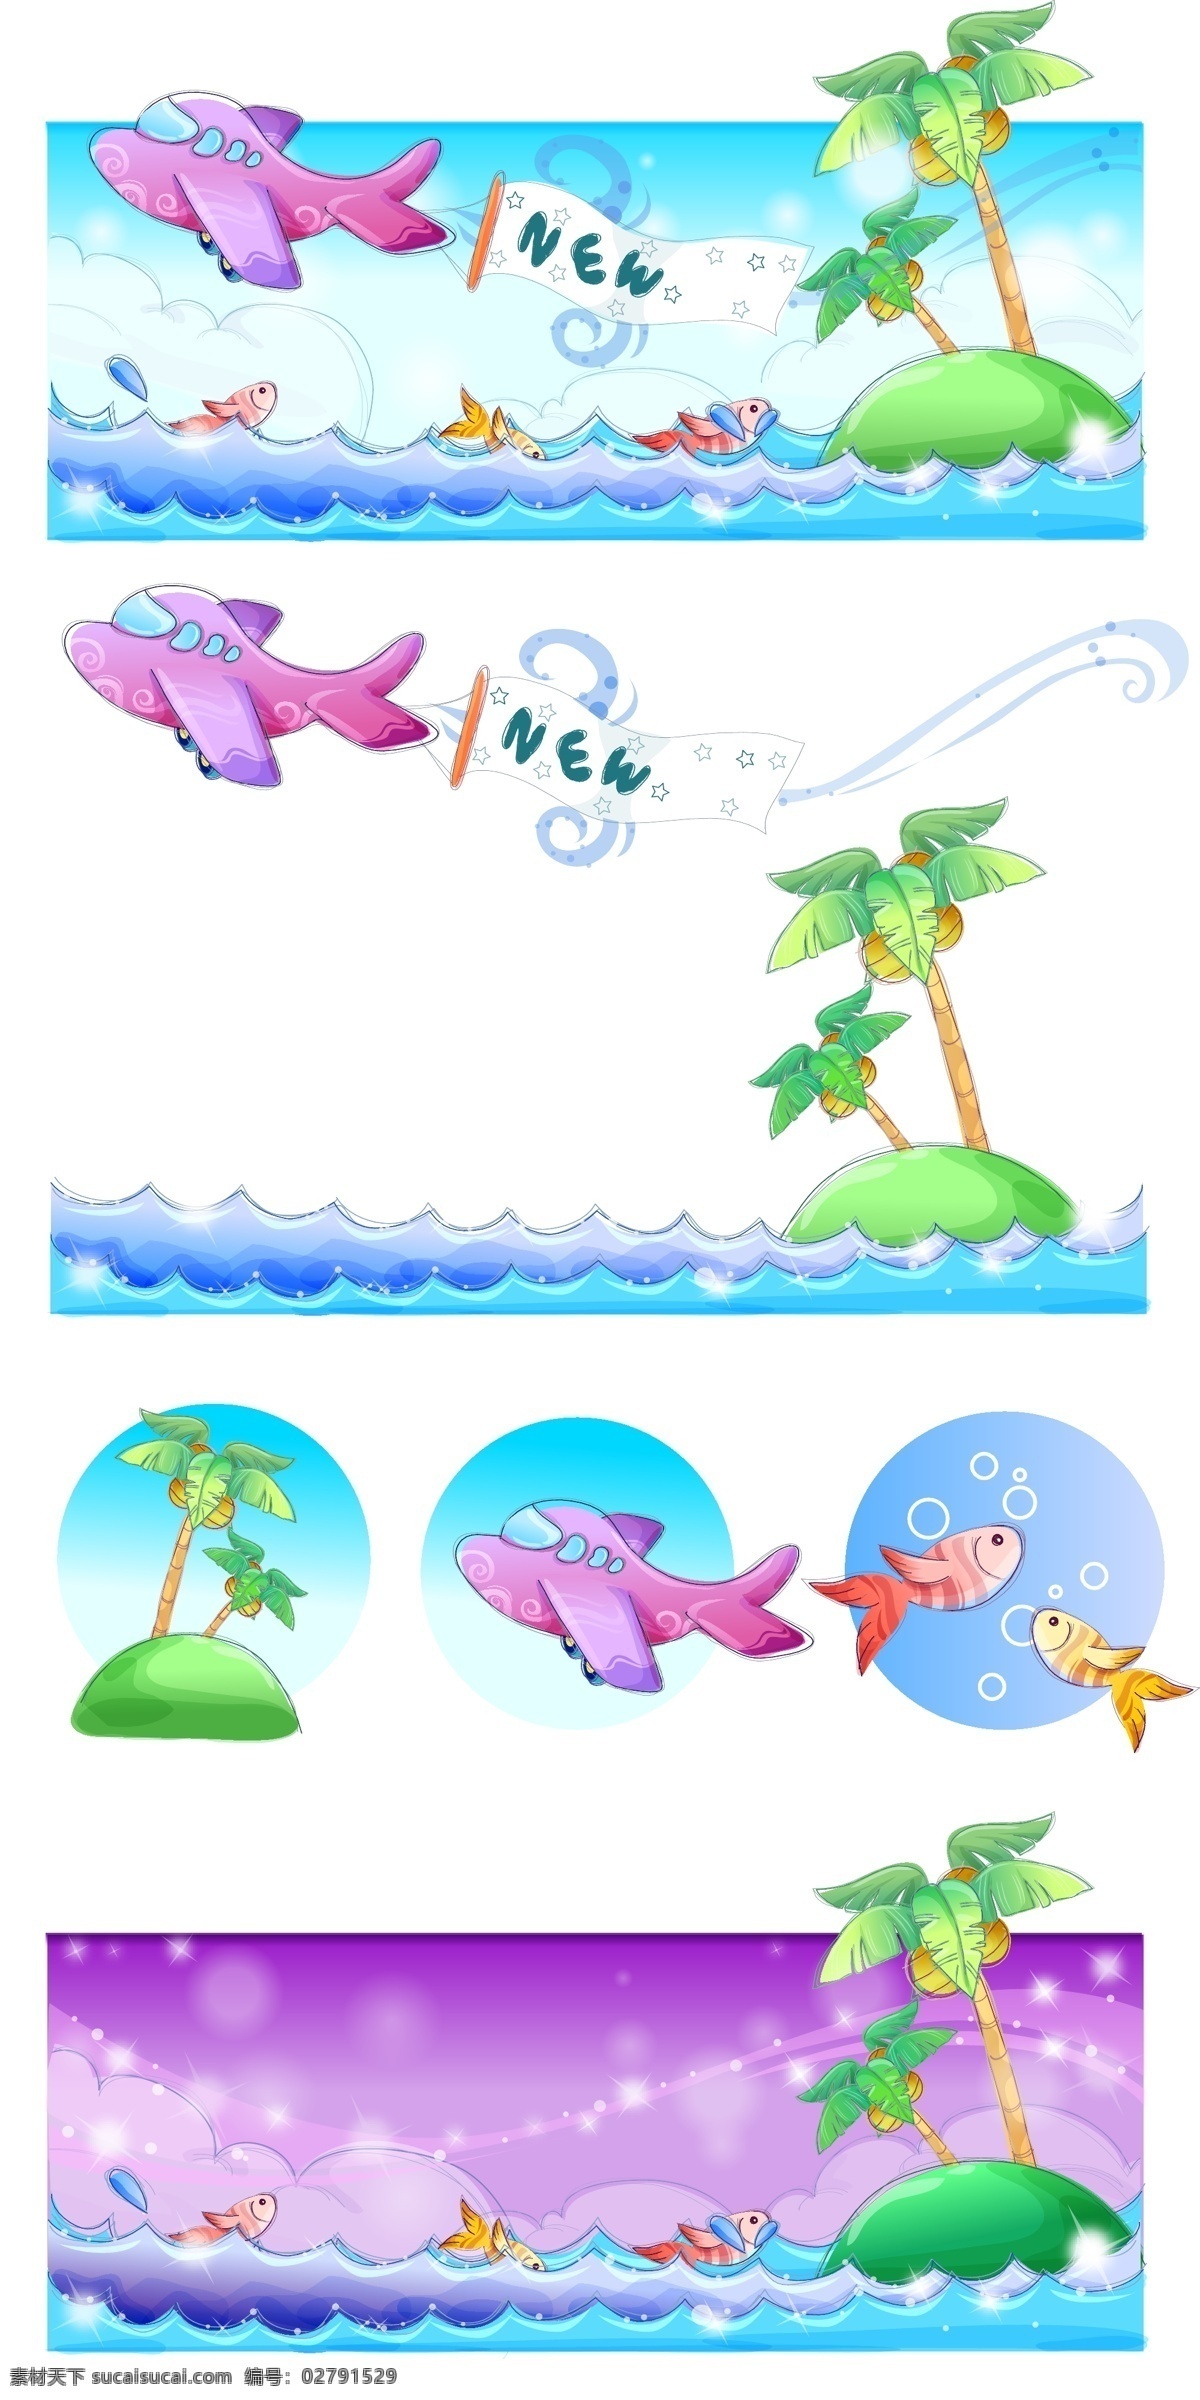 手绘 风格 夏日 风情 系列 矢量 材料 飞机 卡通 夏天 椰子树 鱼 illustrator 新的 载体 矢量图 矢量人物